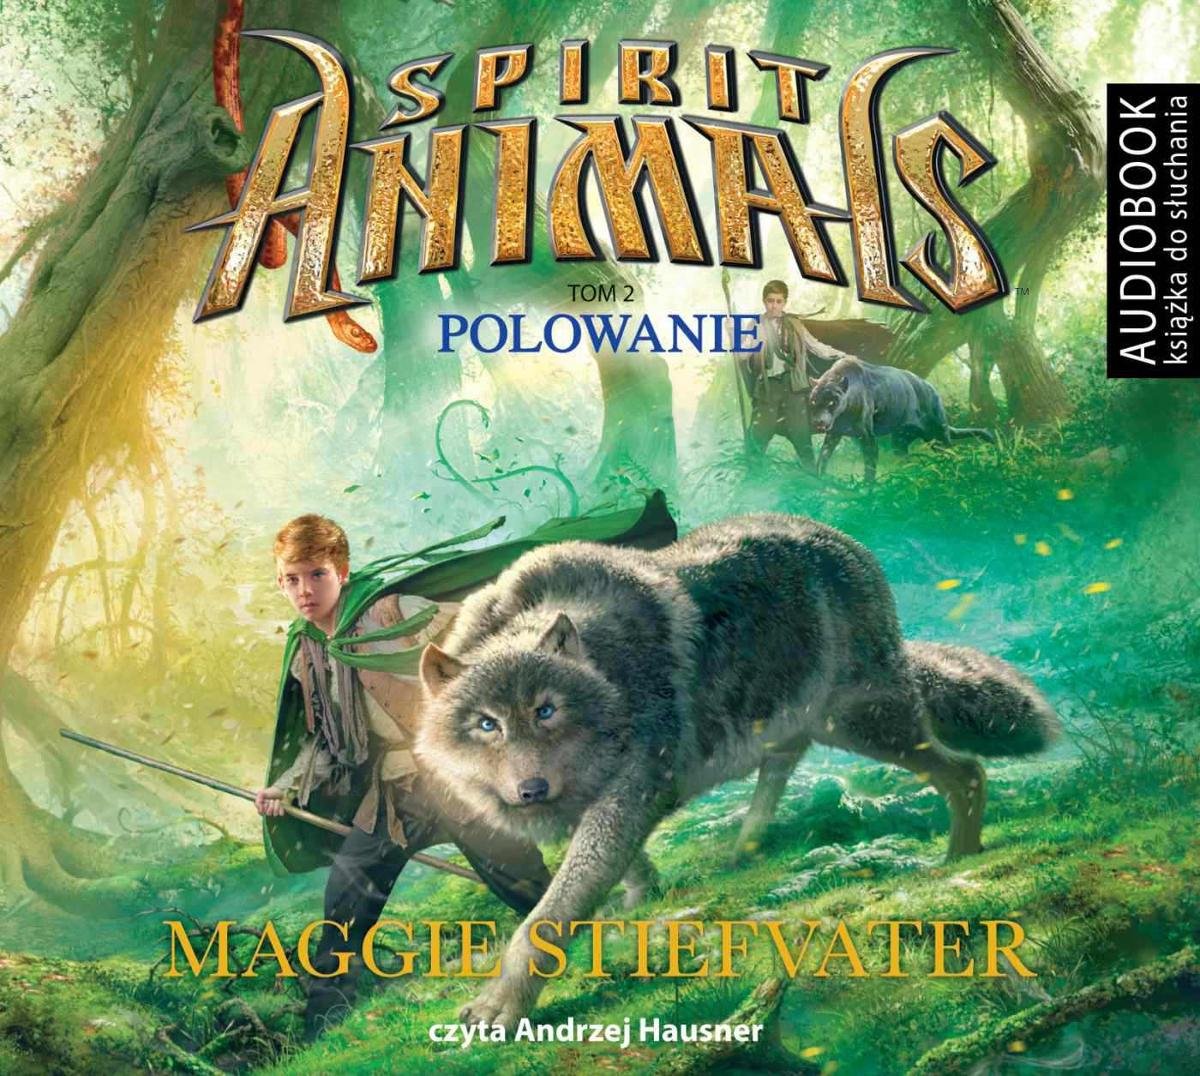 STIEFVATER MAGGIE – SPIRIT ANIMALS 2. POLOWANIE